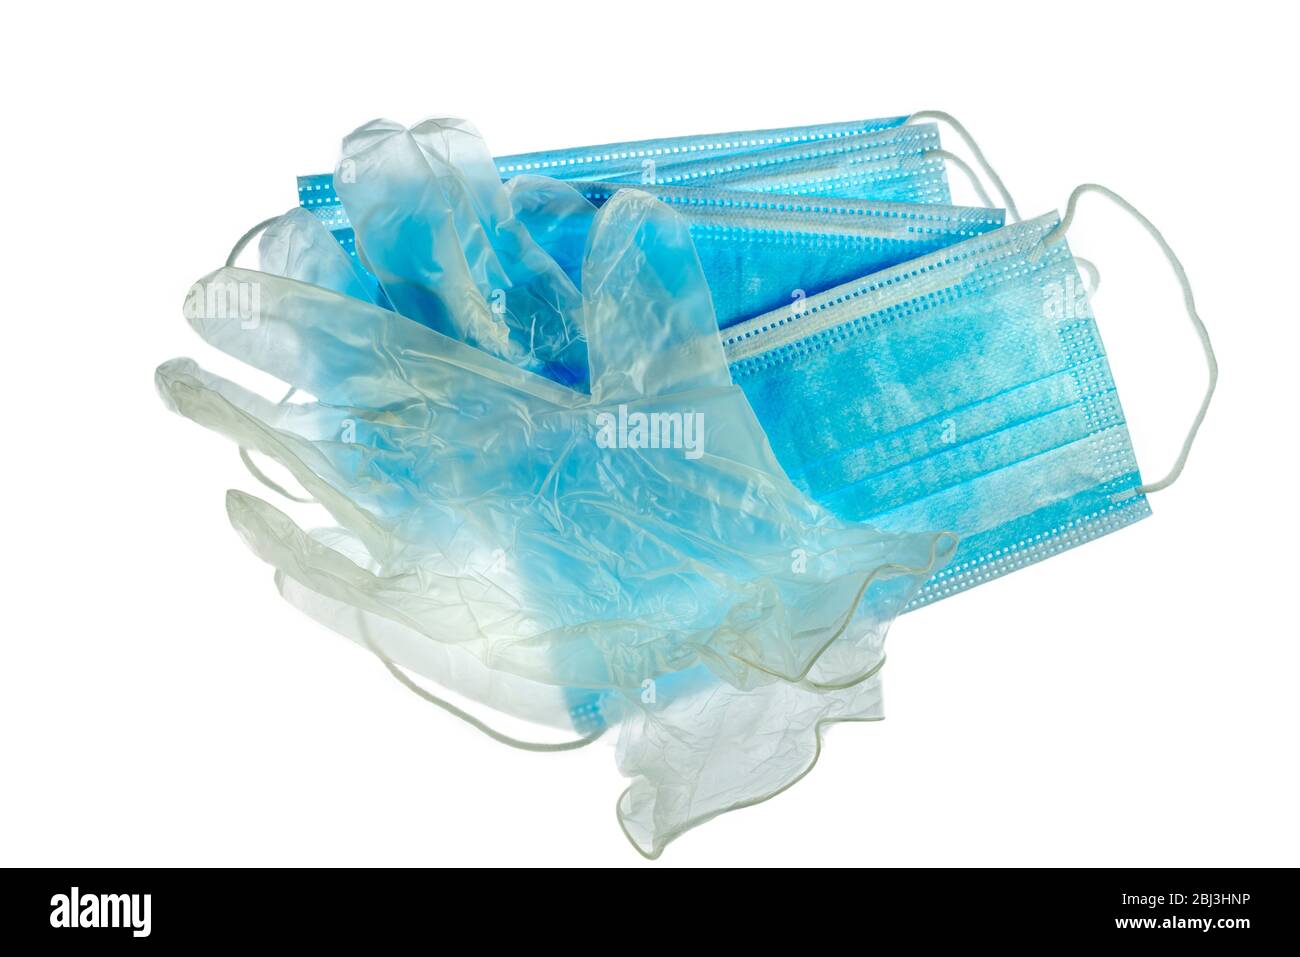 Gants et masques en plastique transparents jetables / masques faciaux pour éviter la propagation des germes pendant la pandémie du virus COVID-19 / coronavirus / corona Banque D'Images